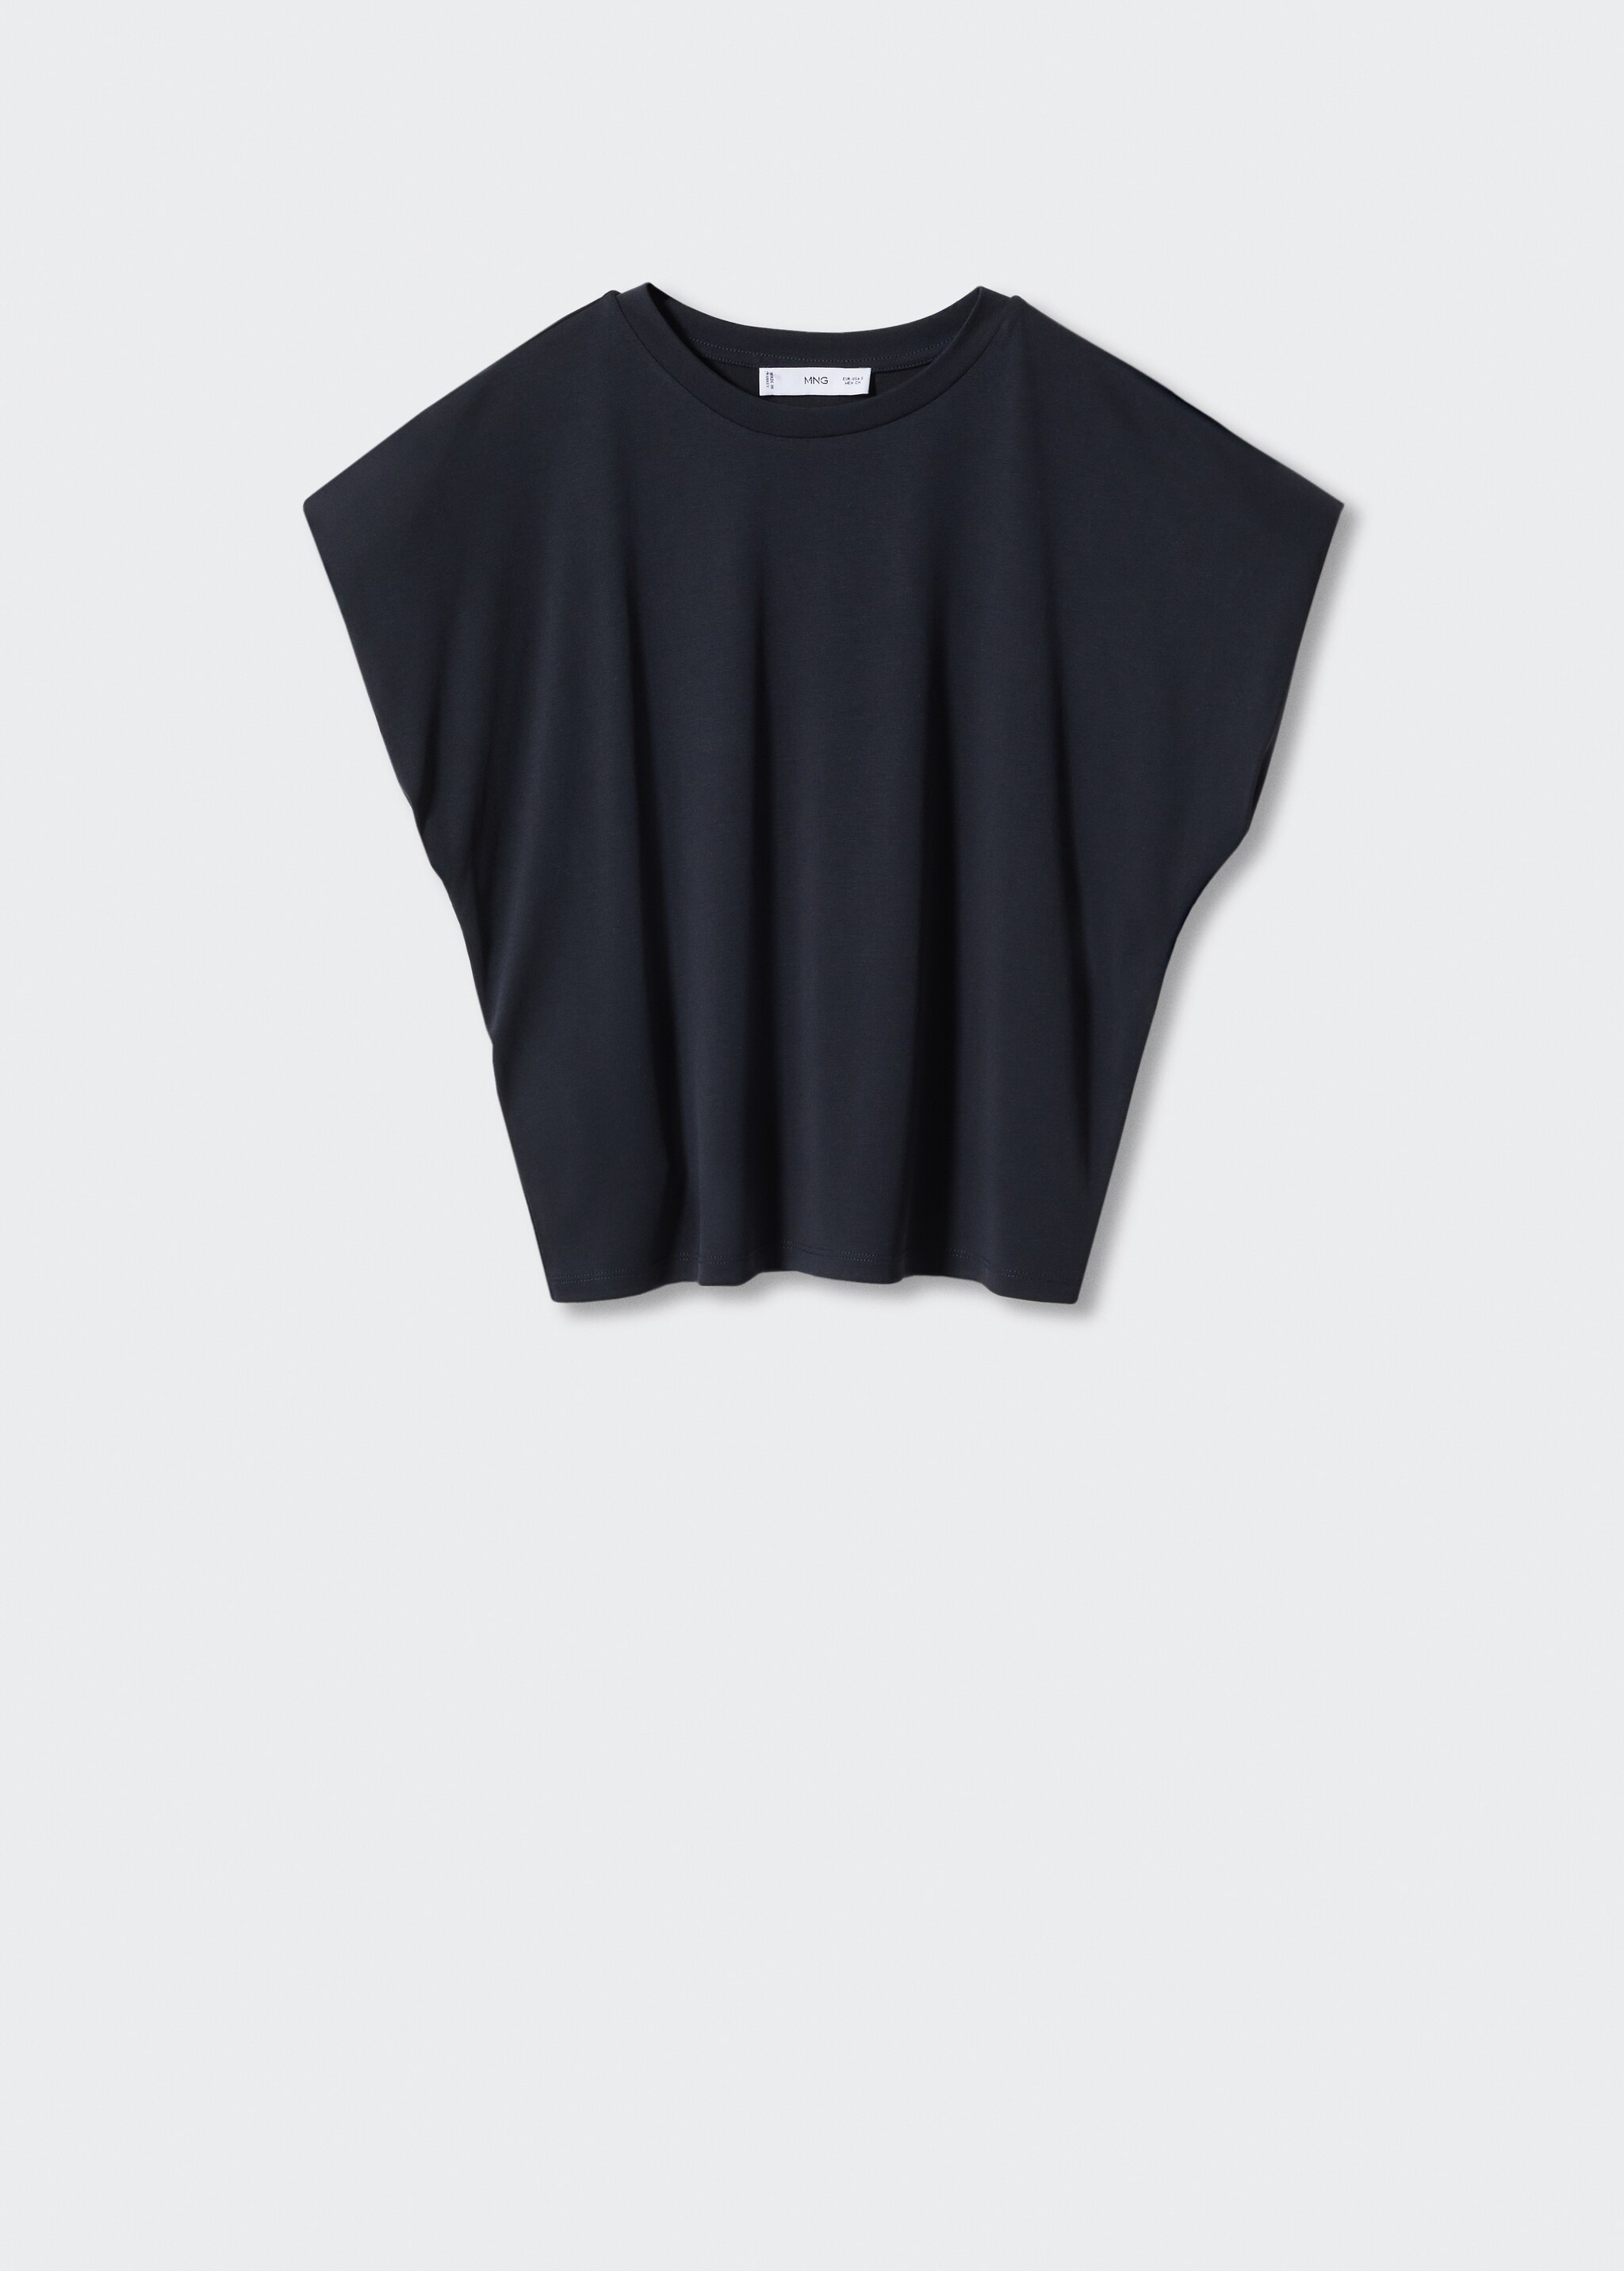 Camiseta modal oversize - Artículo sin modelo